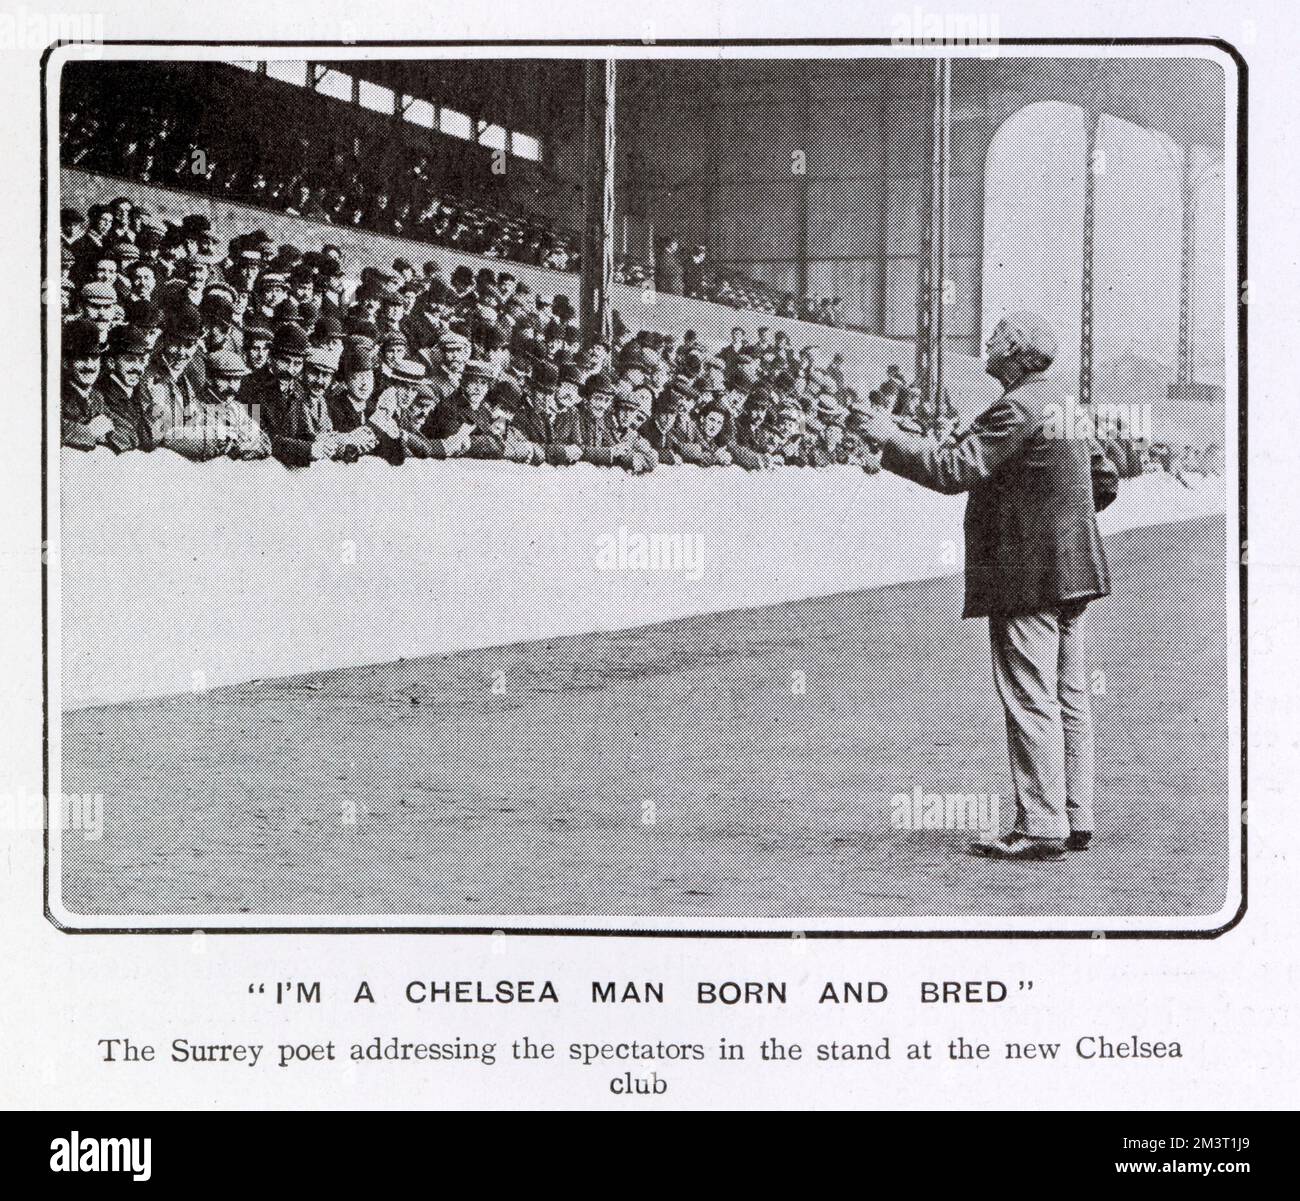 Albert Craig, der sogenannte Surrey-Dichter (1859-1909), eine beliebte Figur, die Gedichte komponierte, die er bei Fußball- und Cricketspielen vortrug, und anschließend gedruckte Blätter seiner Verse an die Menge verkaufte. Hier sehen Sie eine Aufführung für die Massen auf den Tribünen des neuen Chelsea Clubs. Stockfoto